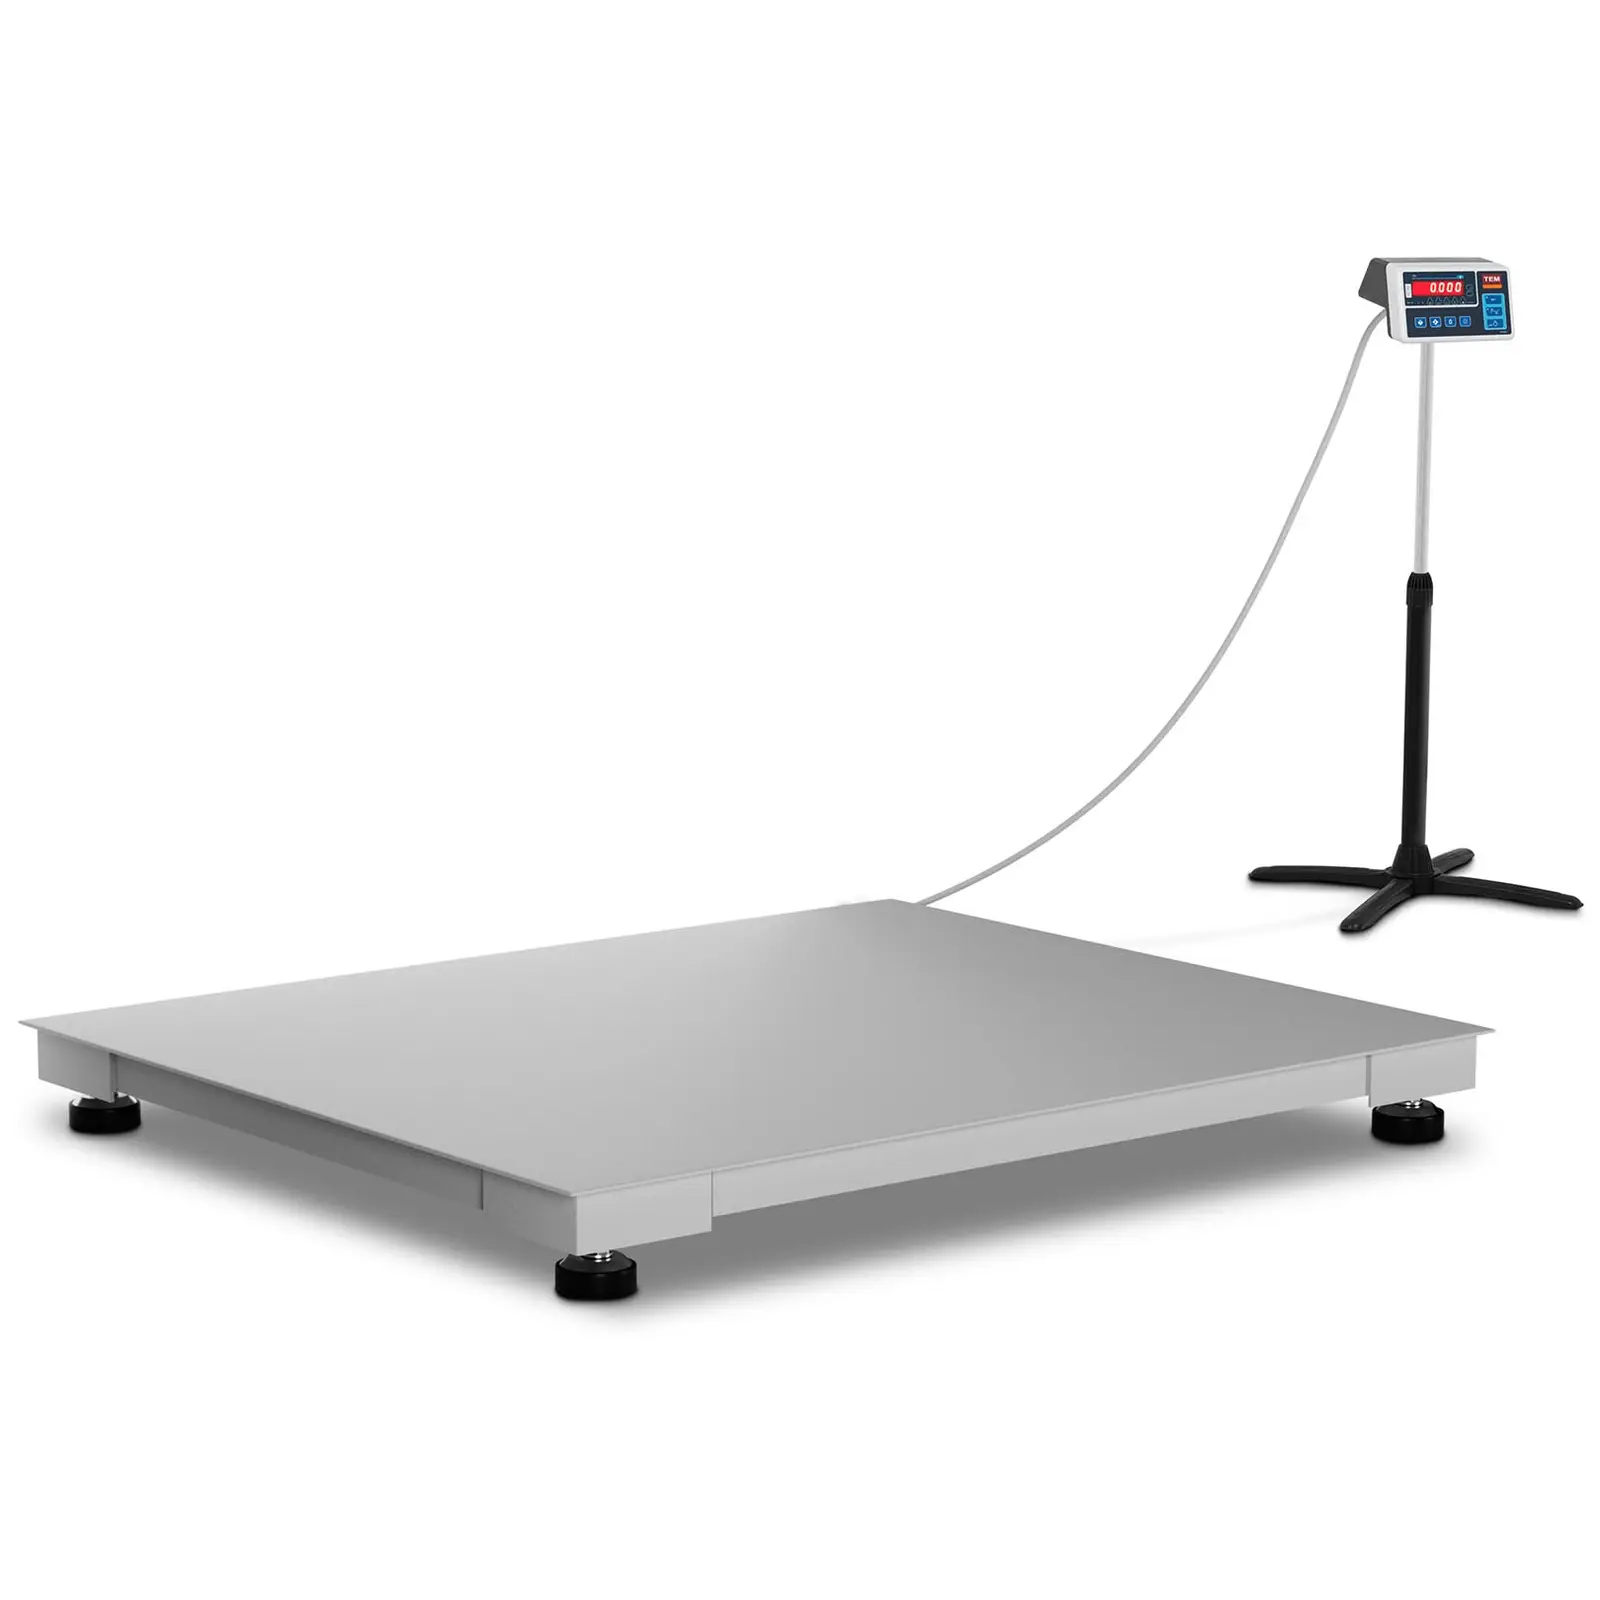 Balance au sol - Calibrage certifié - 600 kg / 200 g - 100 x 120 cm - LED